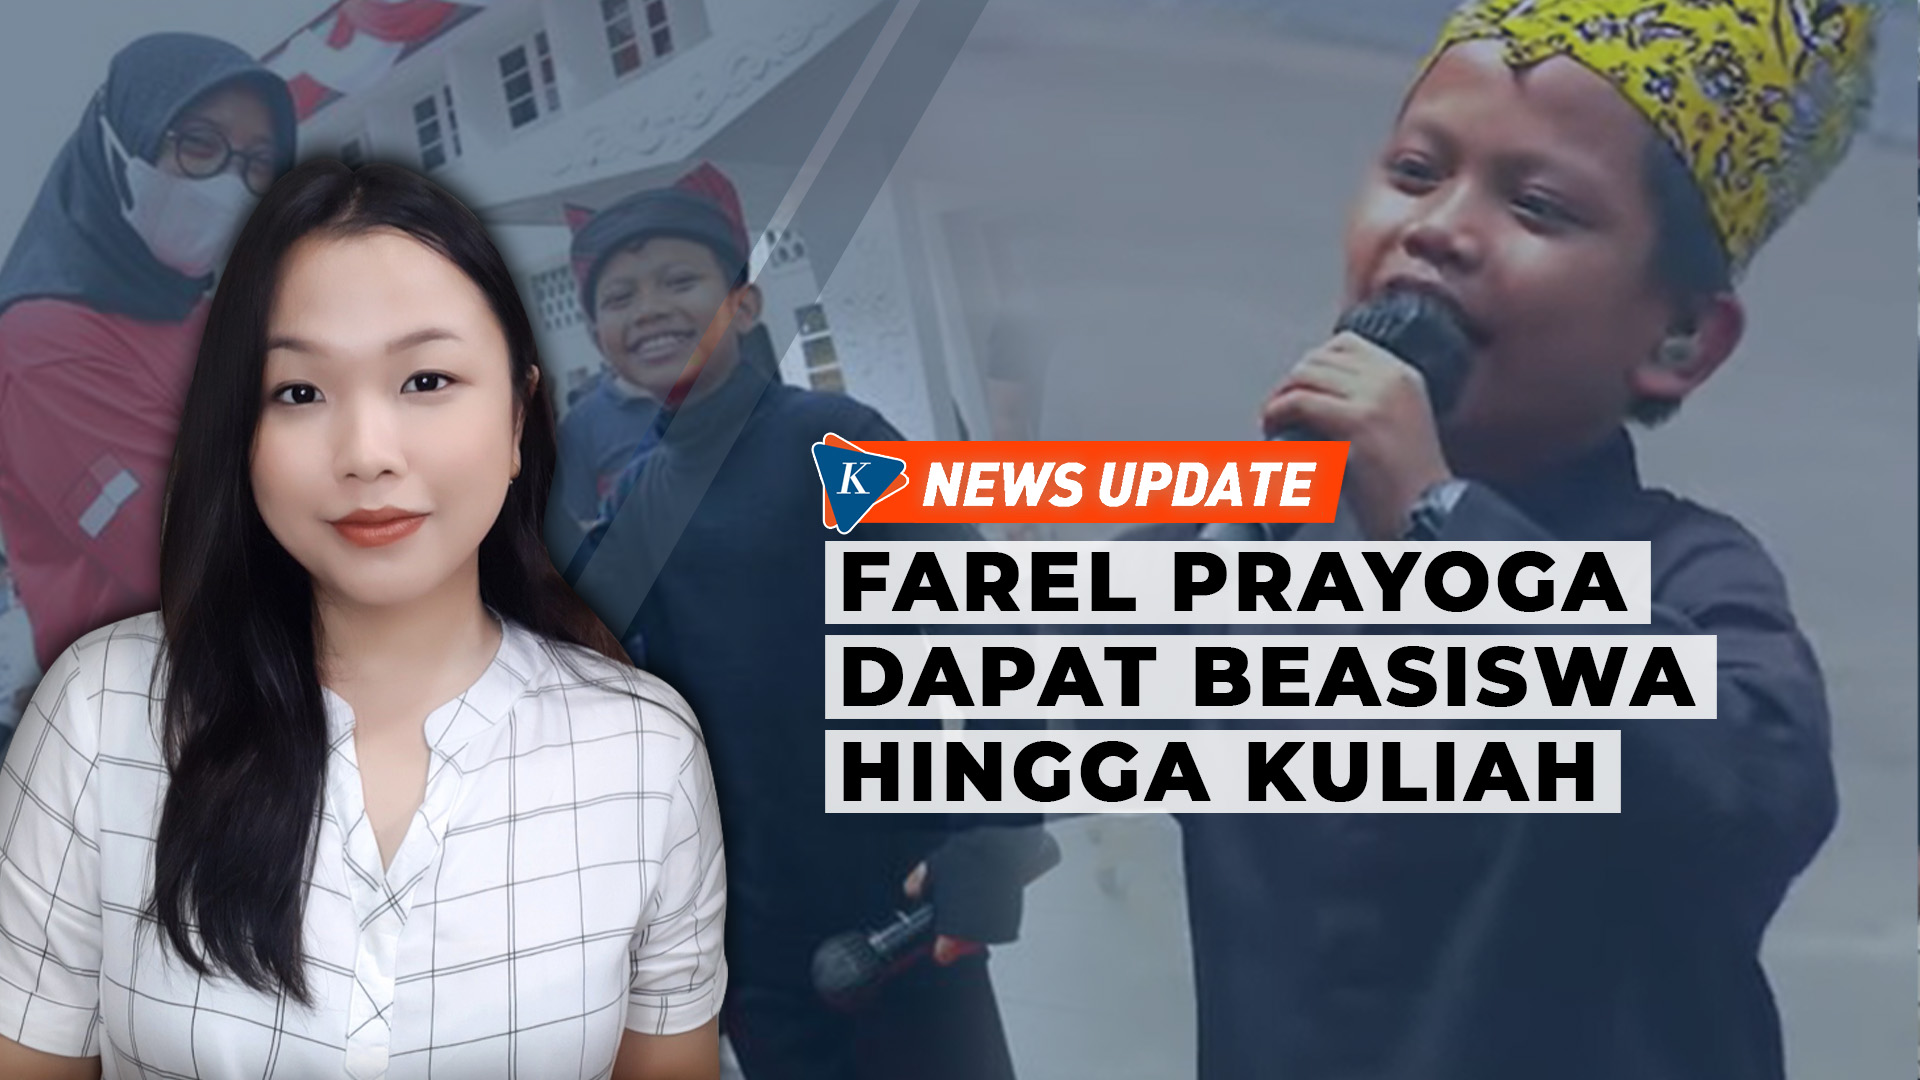 Farel Prayoga Dapat Beasiswa sampai Kuliah hingga Dikontrak Label Musik 5 Tahun